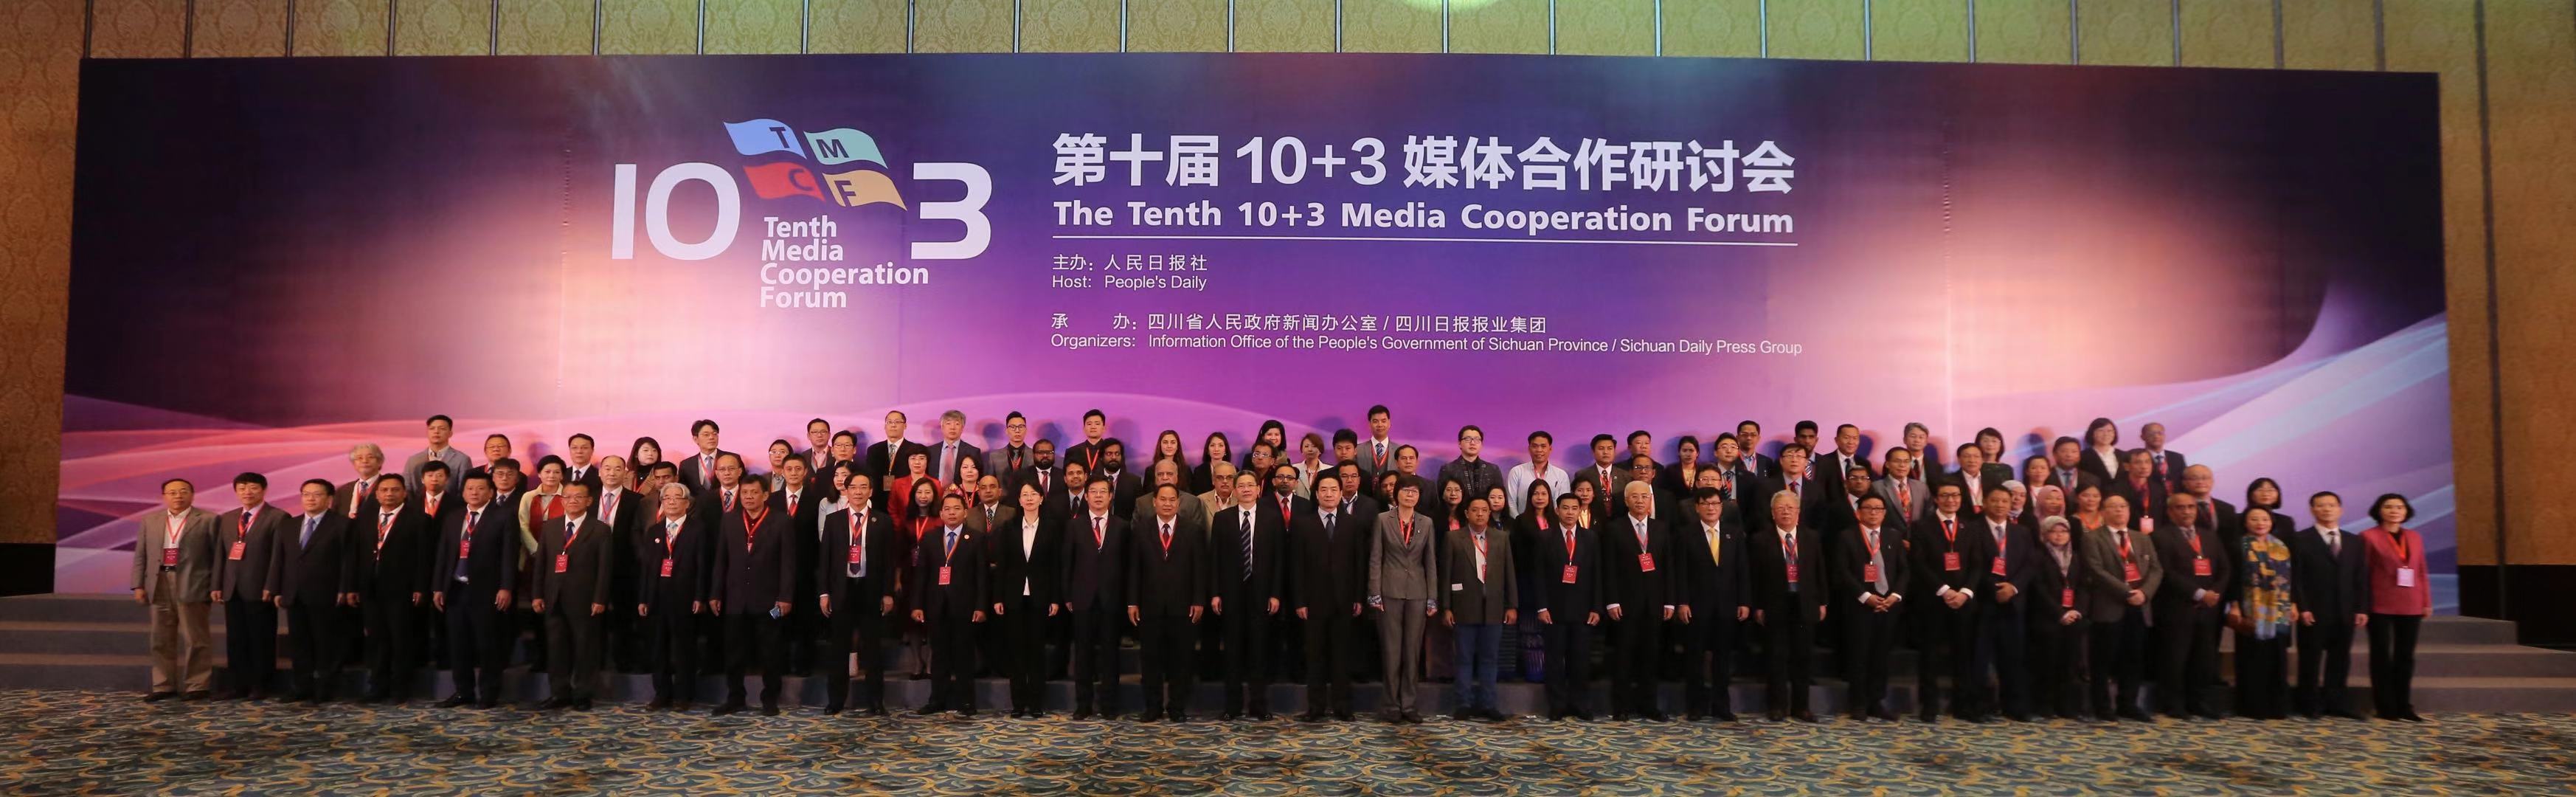 以“开放包容的中国，发展繁荣的亚洲”为主题的第十届10+3媒体合作研讨会在成都举行